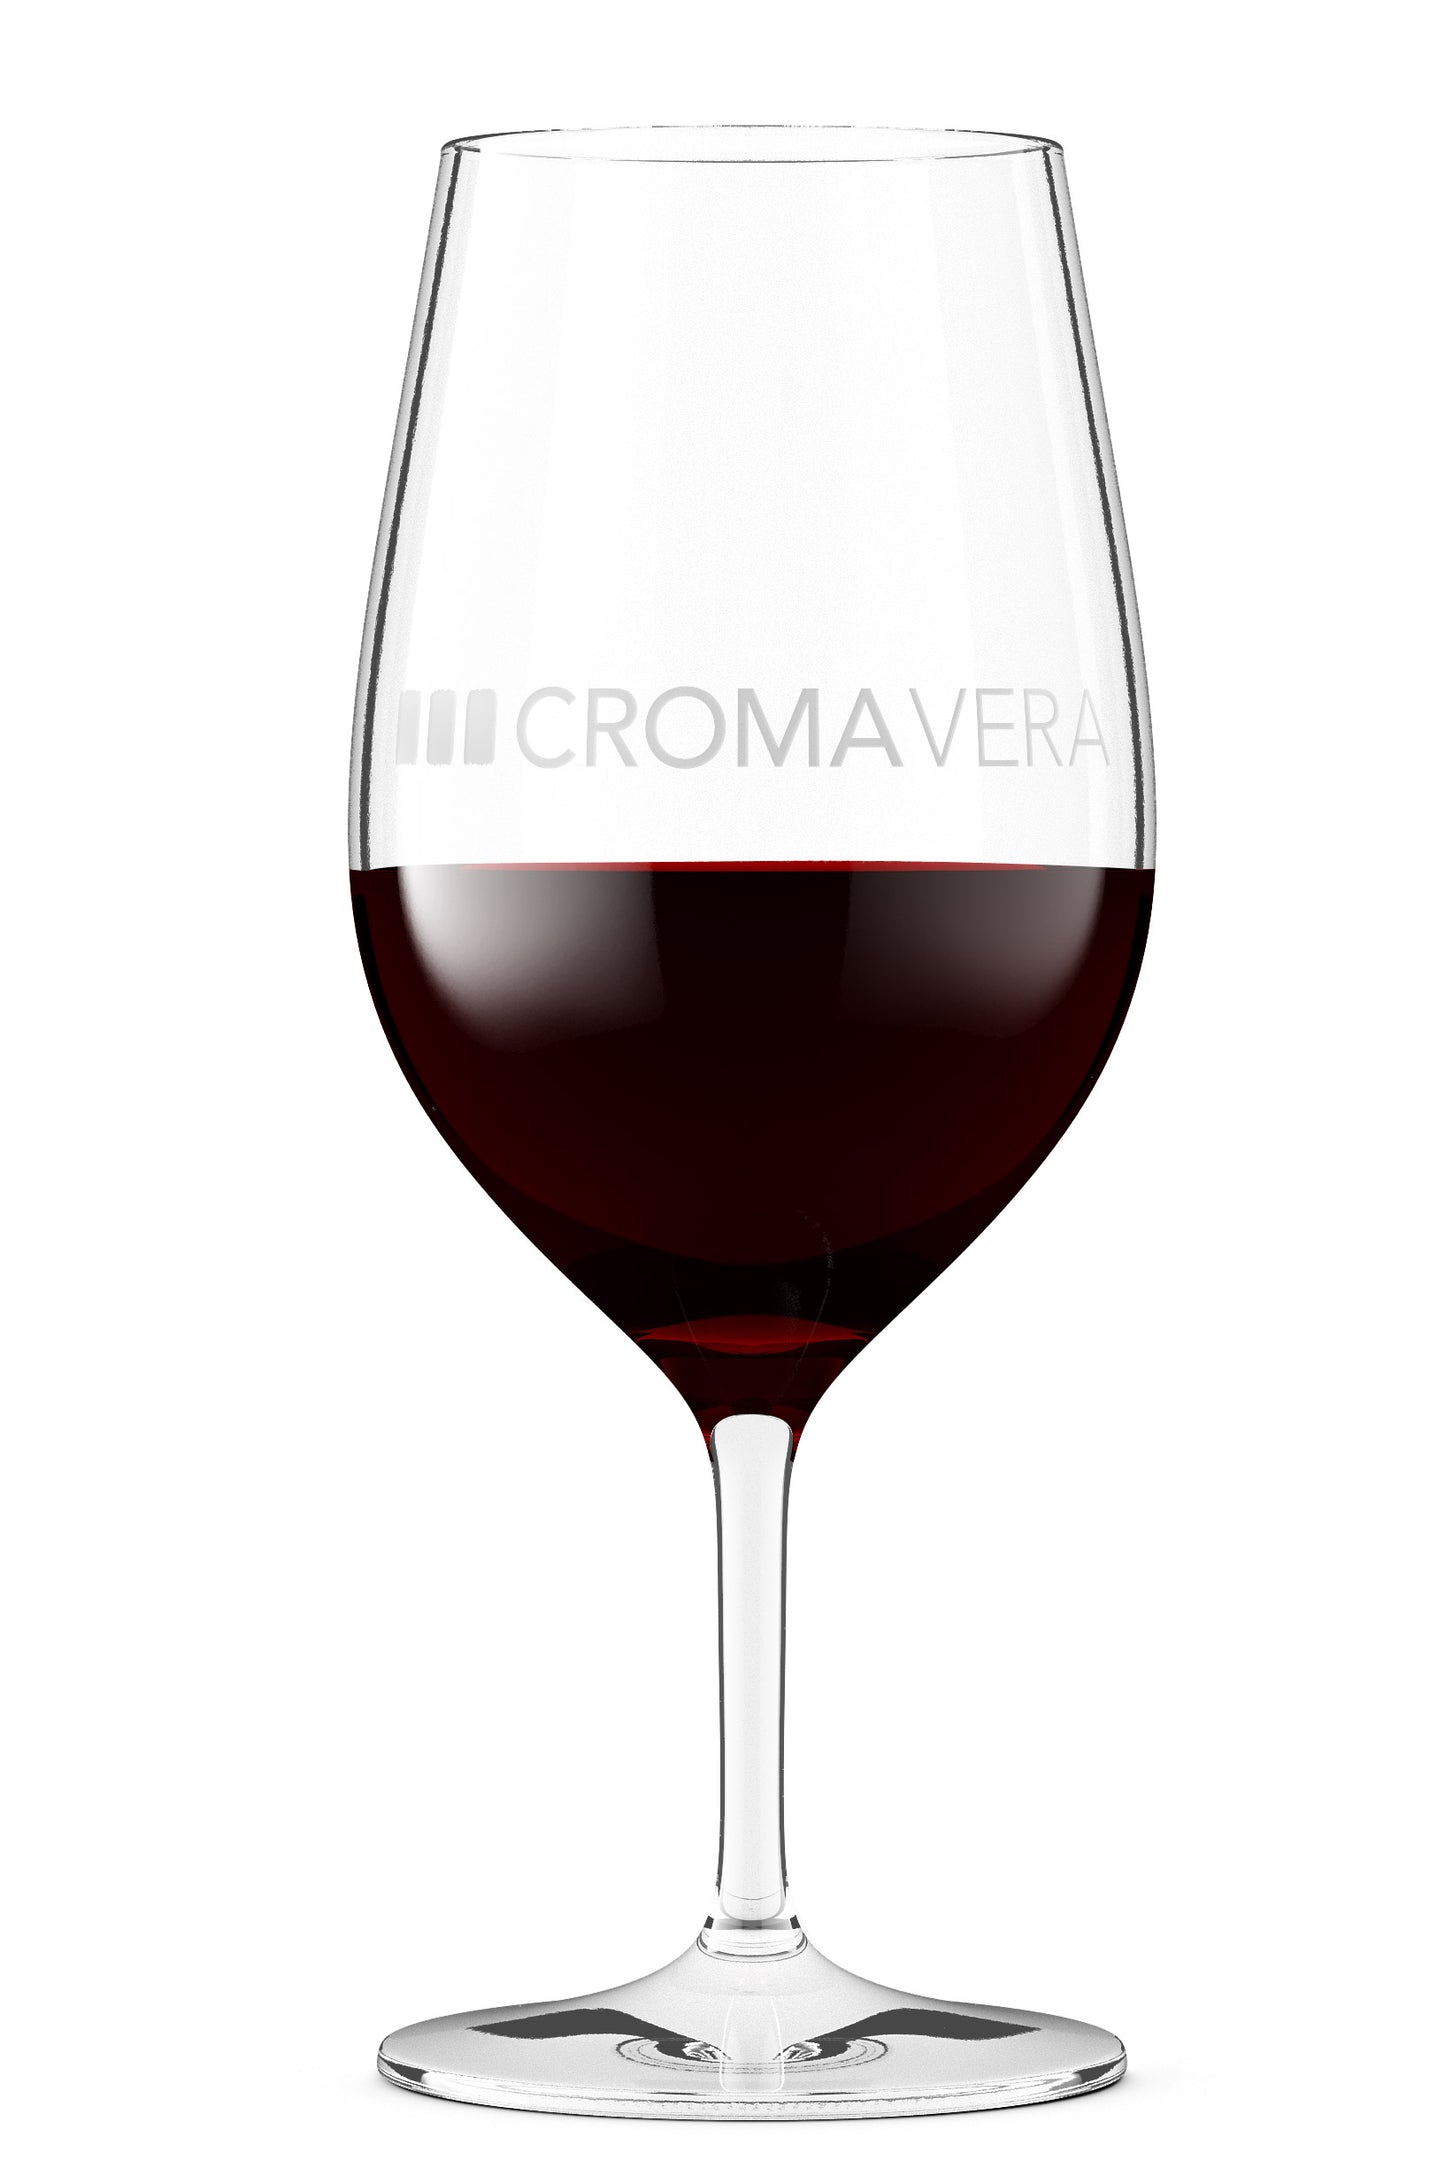 Croma Vera Tempranillo Maduro red wine in a wine glass